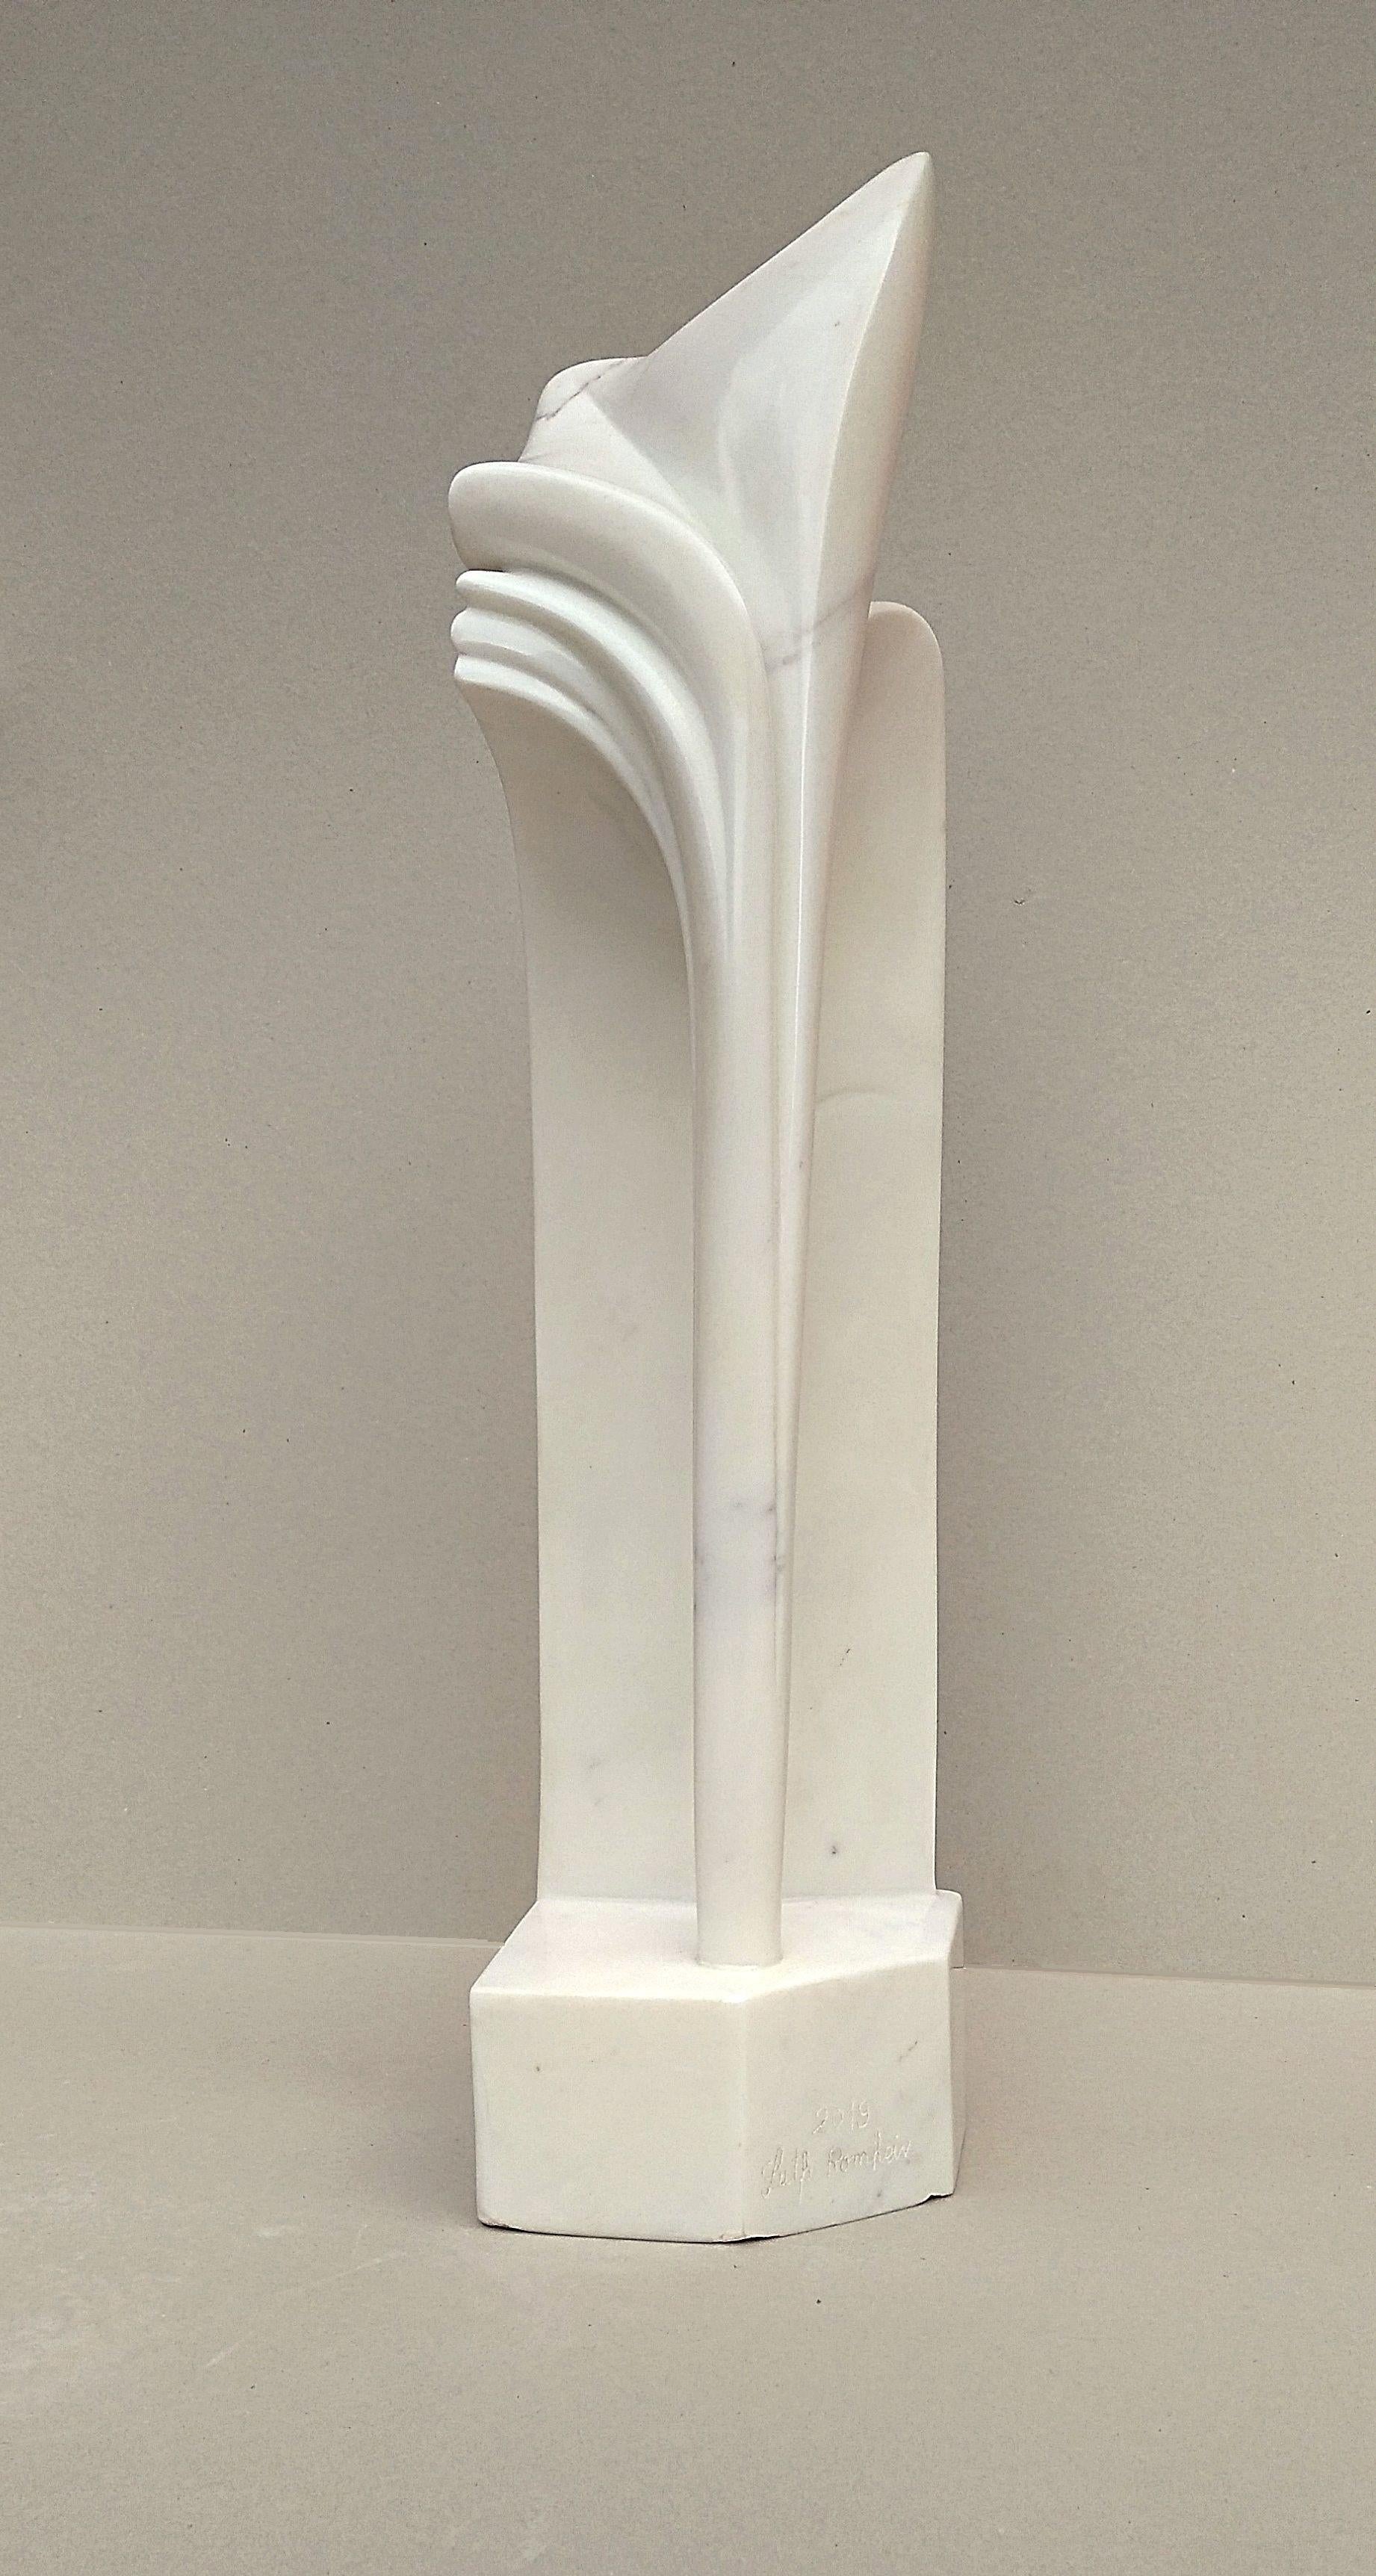 Gebogener Bogen, ungewöhnliche vertikale figurative Skulptur aus weißem Carrara-Statuenmarmorstein (Grau), Abstract Sculpture, von Lutfi Romhein